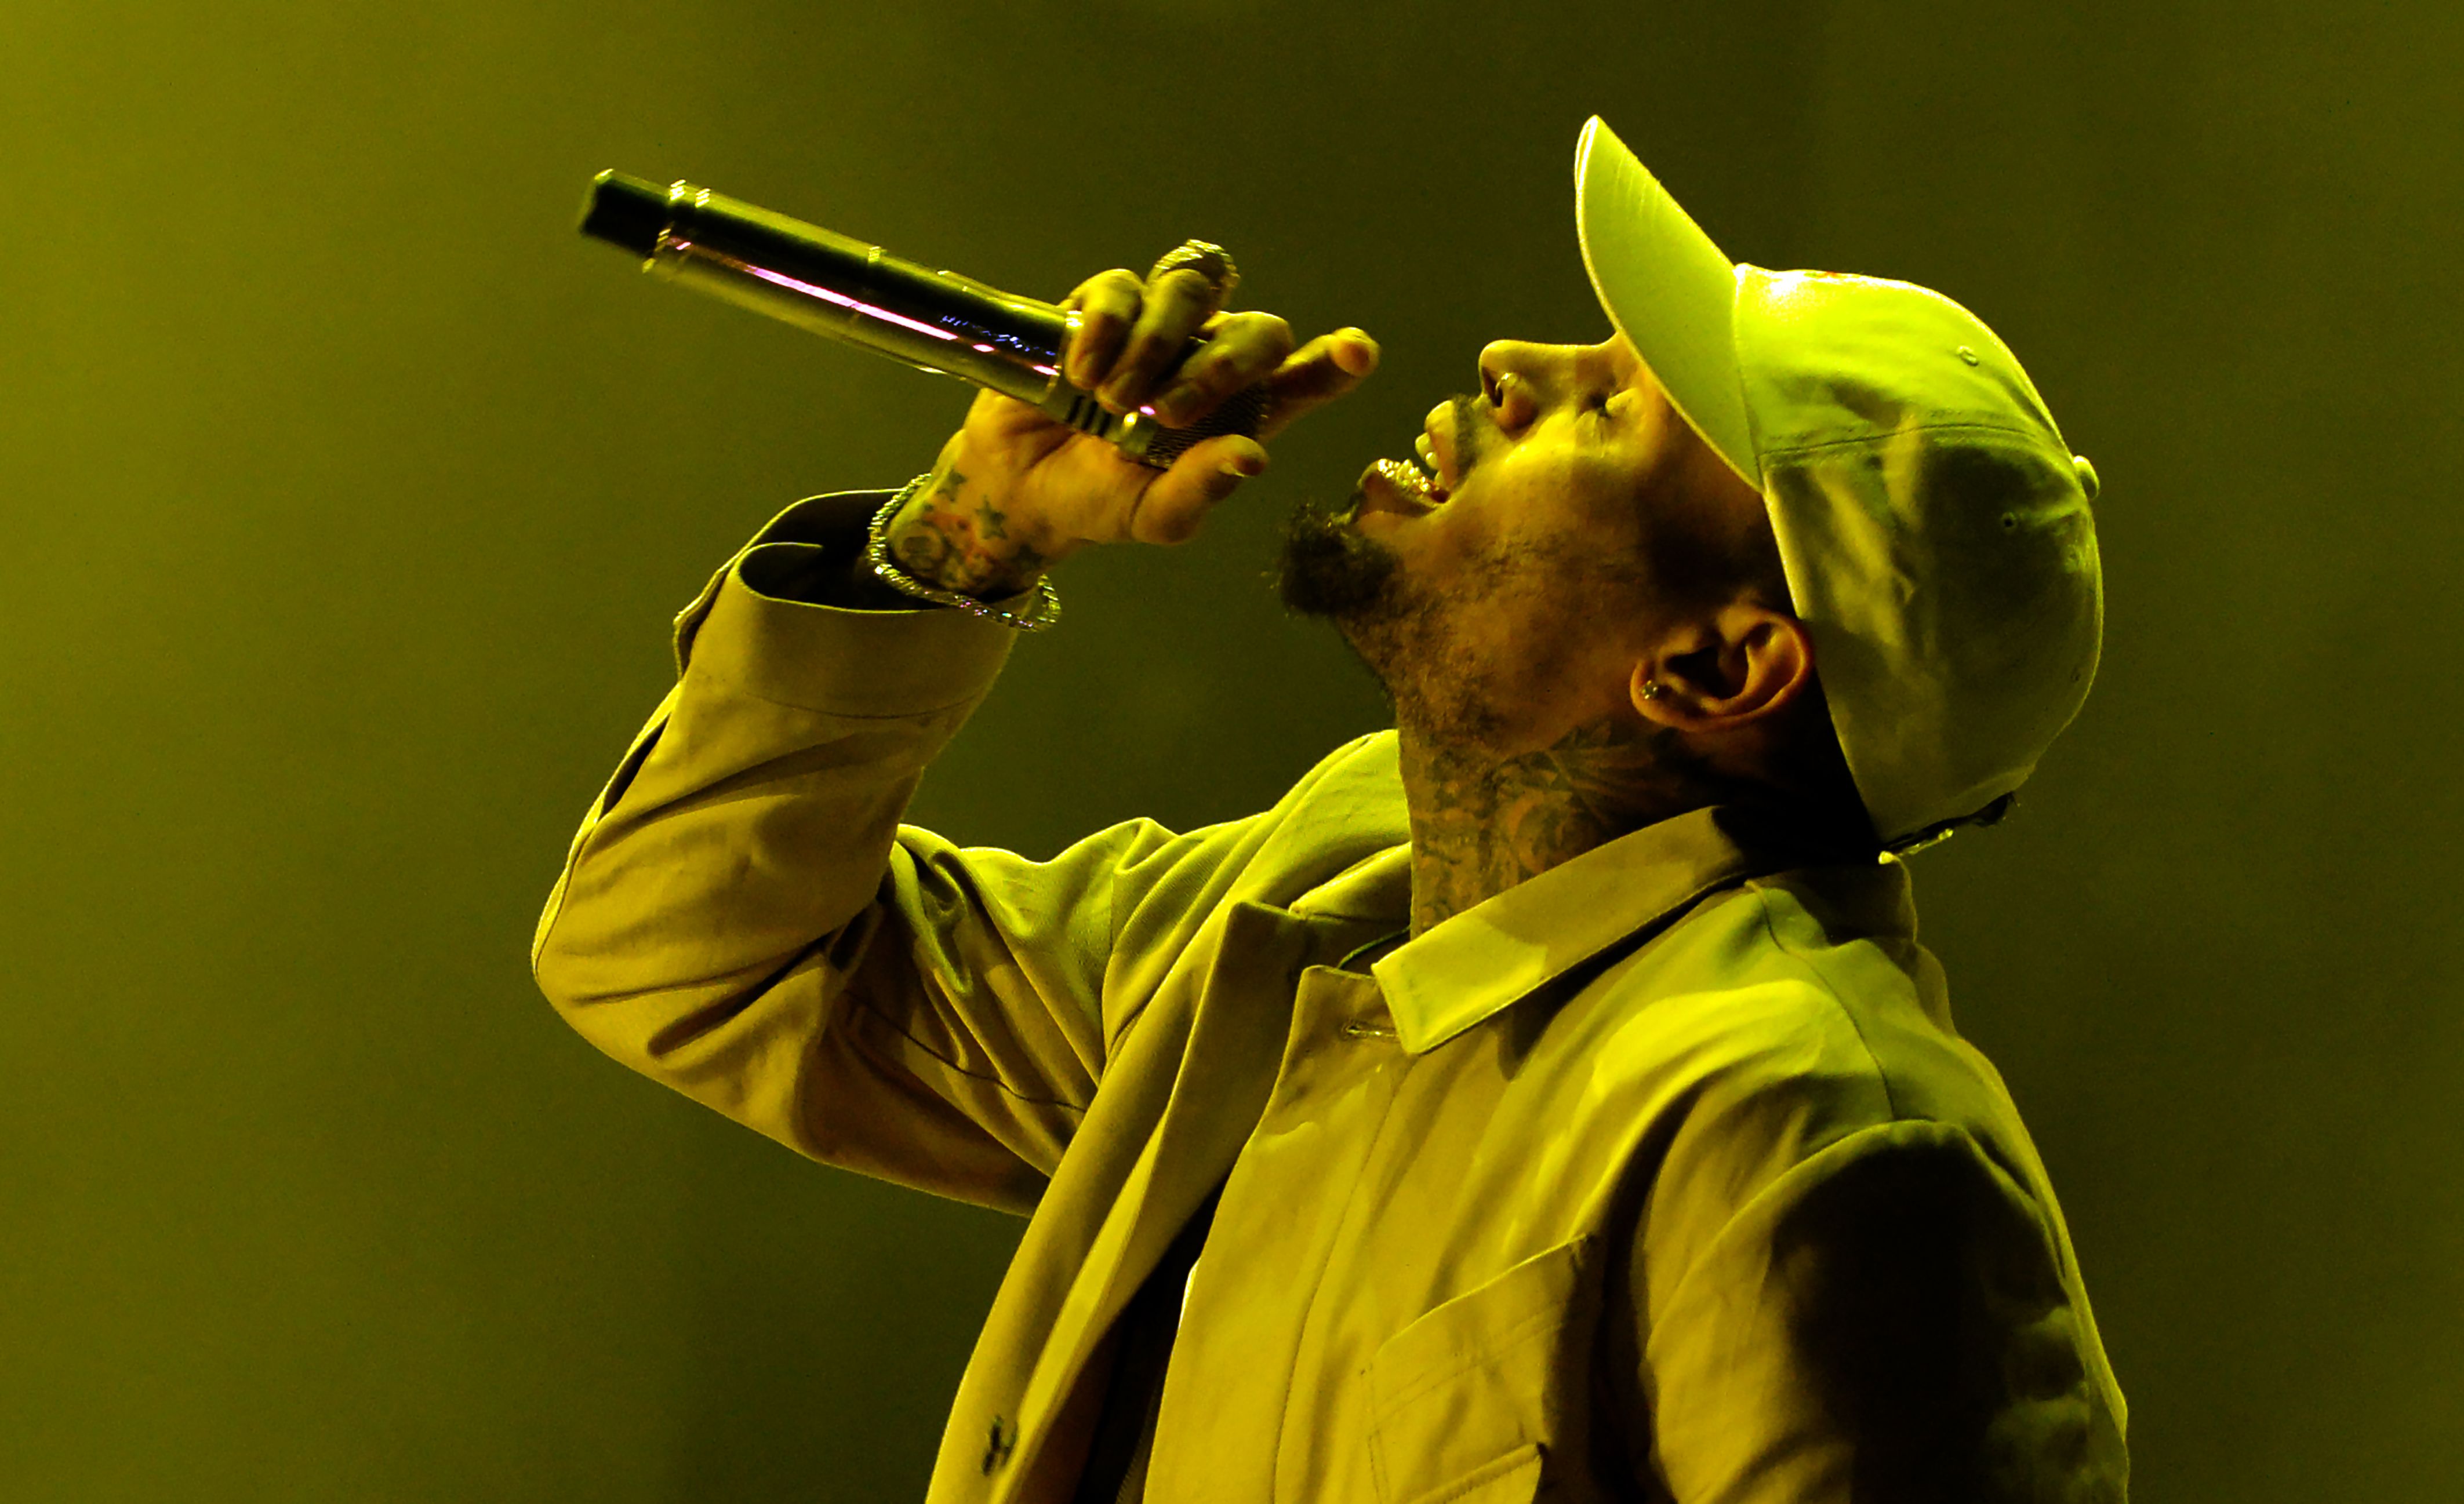 El rapero Chris Brown rechaza los señalamientos en su contra y demandará a la mujer que lo acusa. (Foto Prensa Libre: AFP)